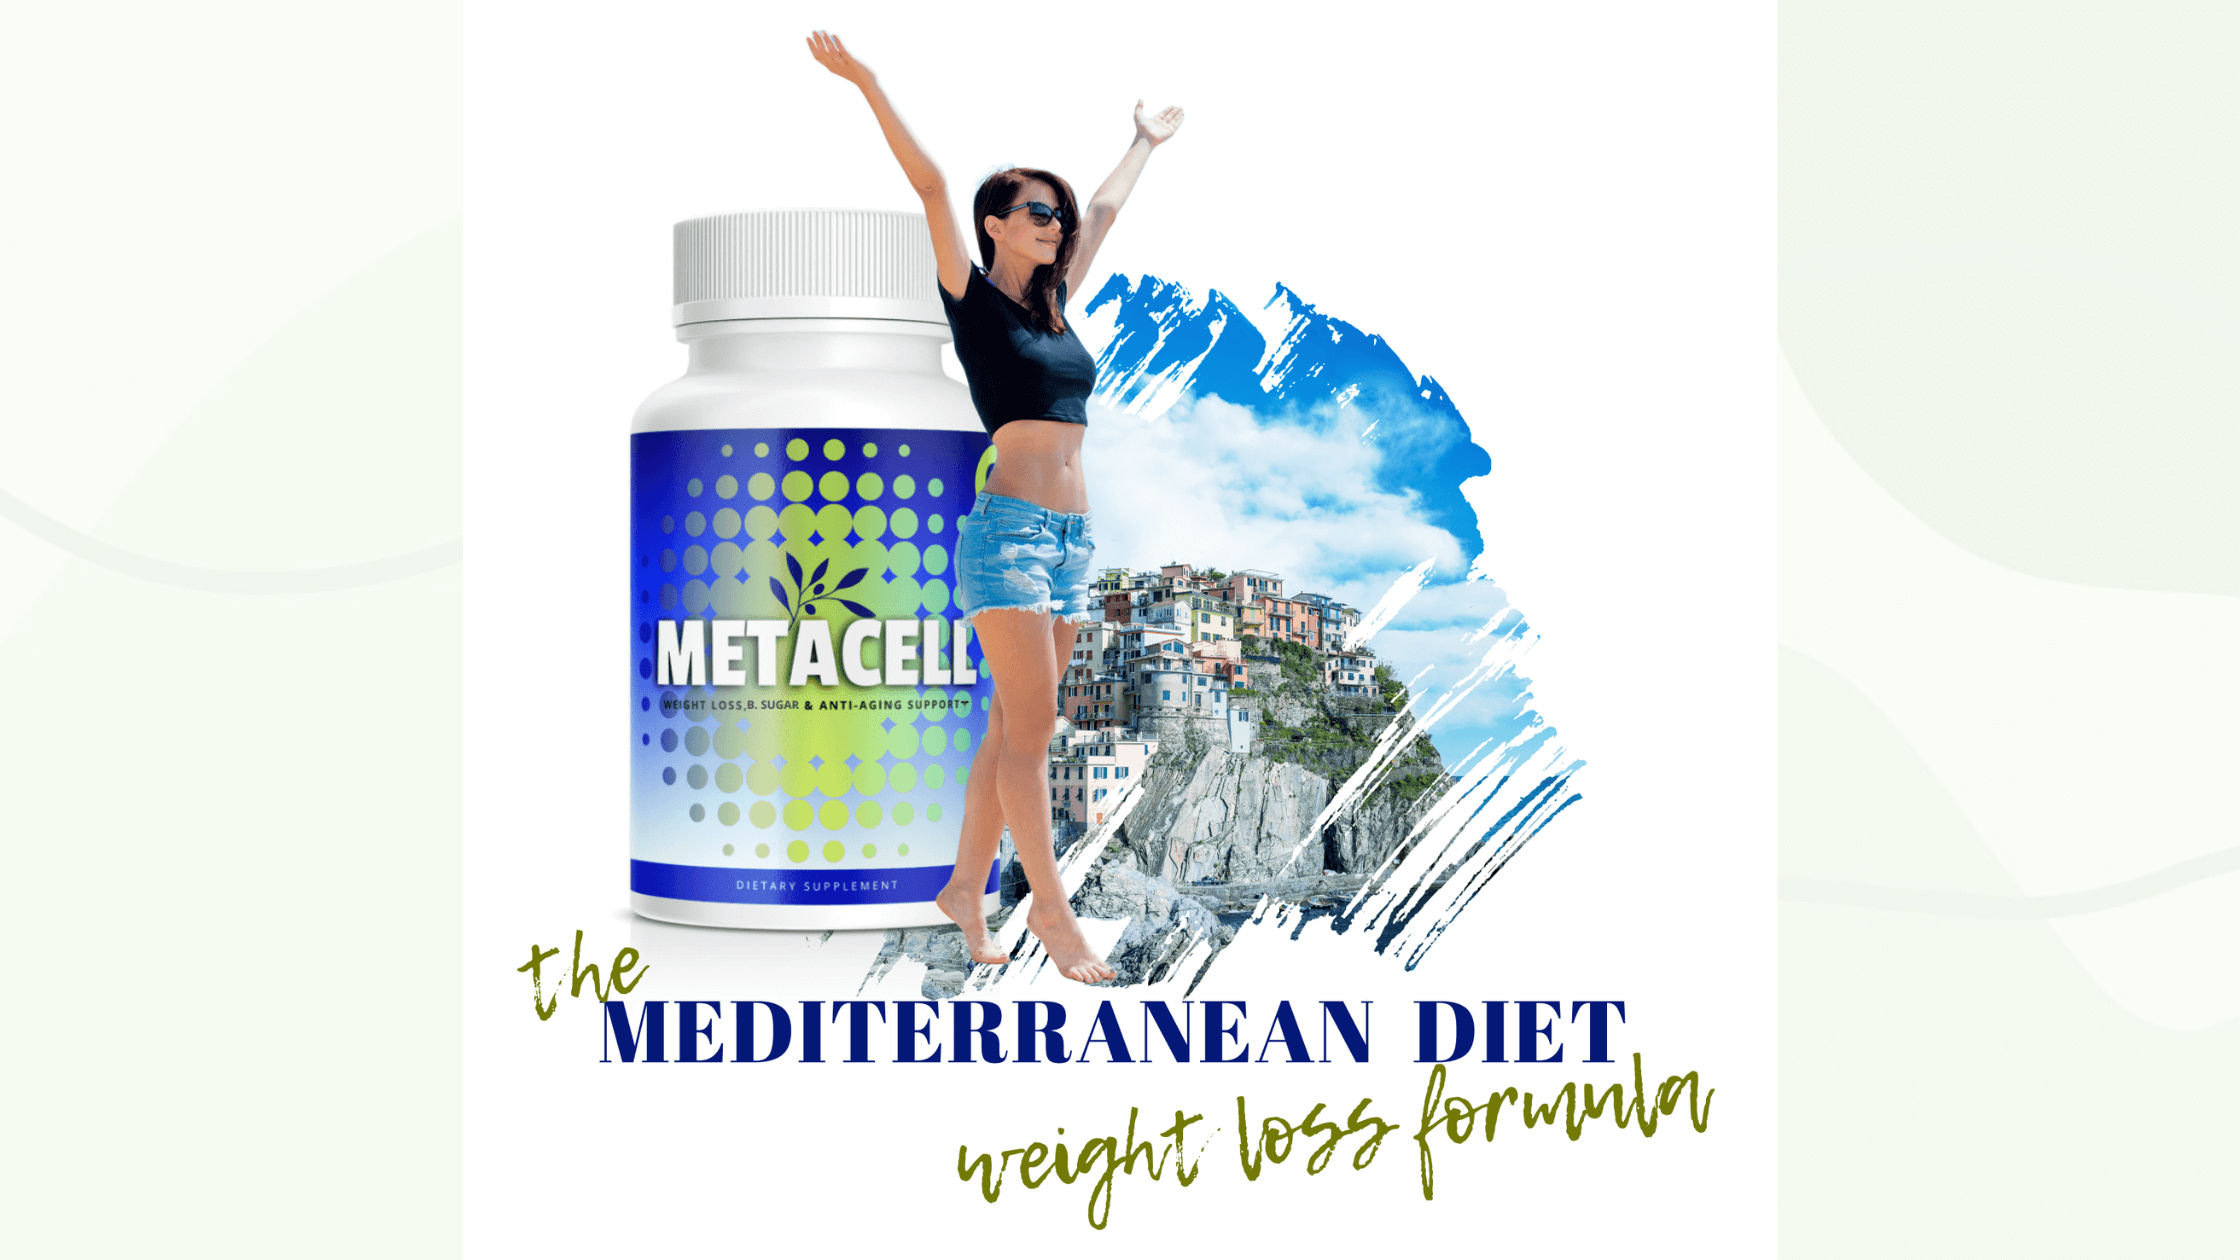 Metacell Mediterranean Diet Weight Loss Formula